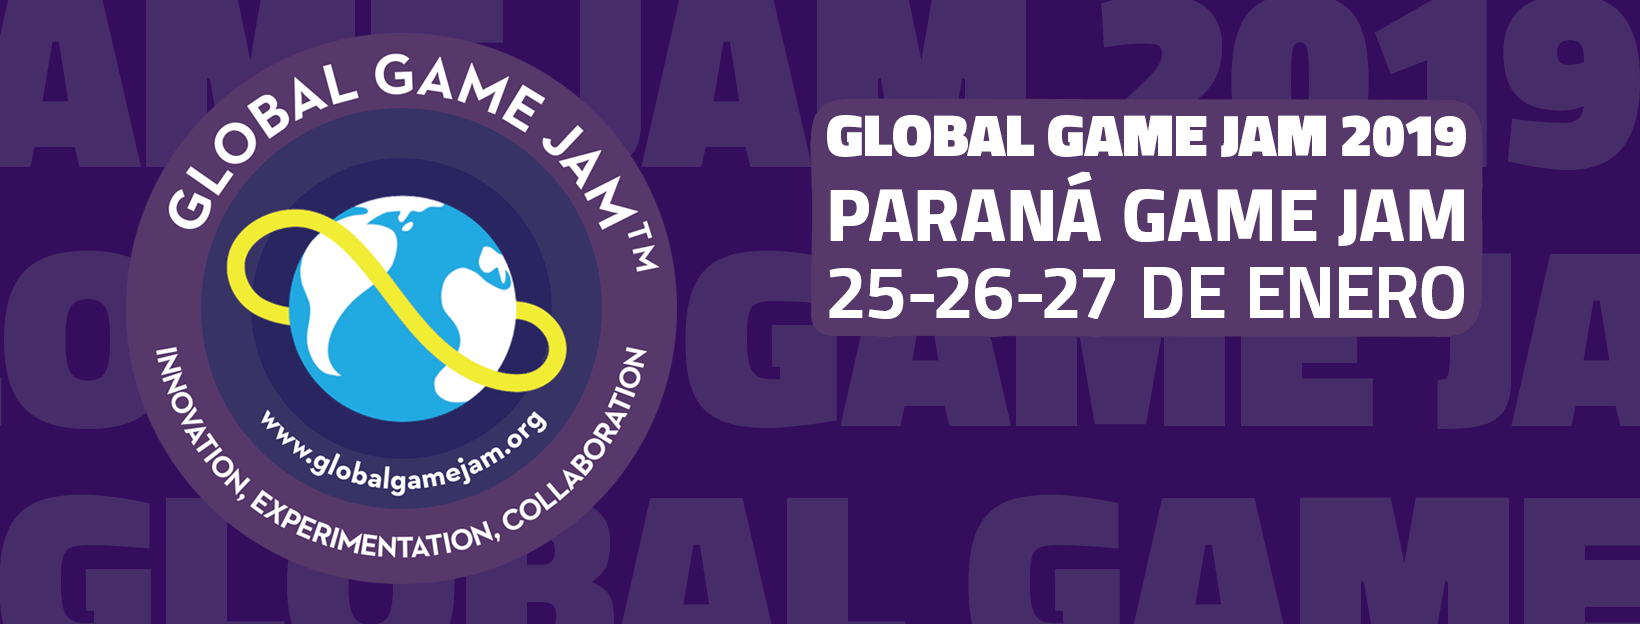 Portada global game jam Parana.png